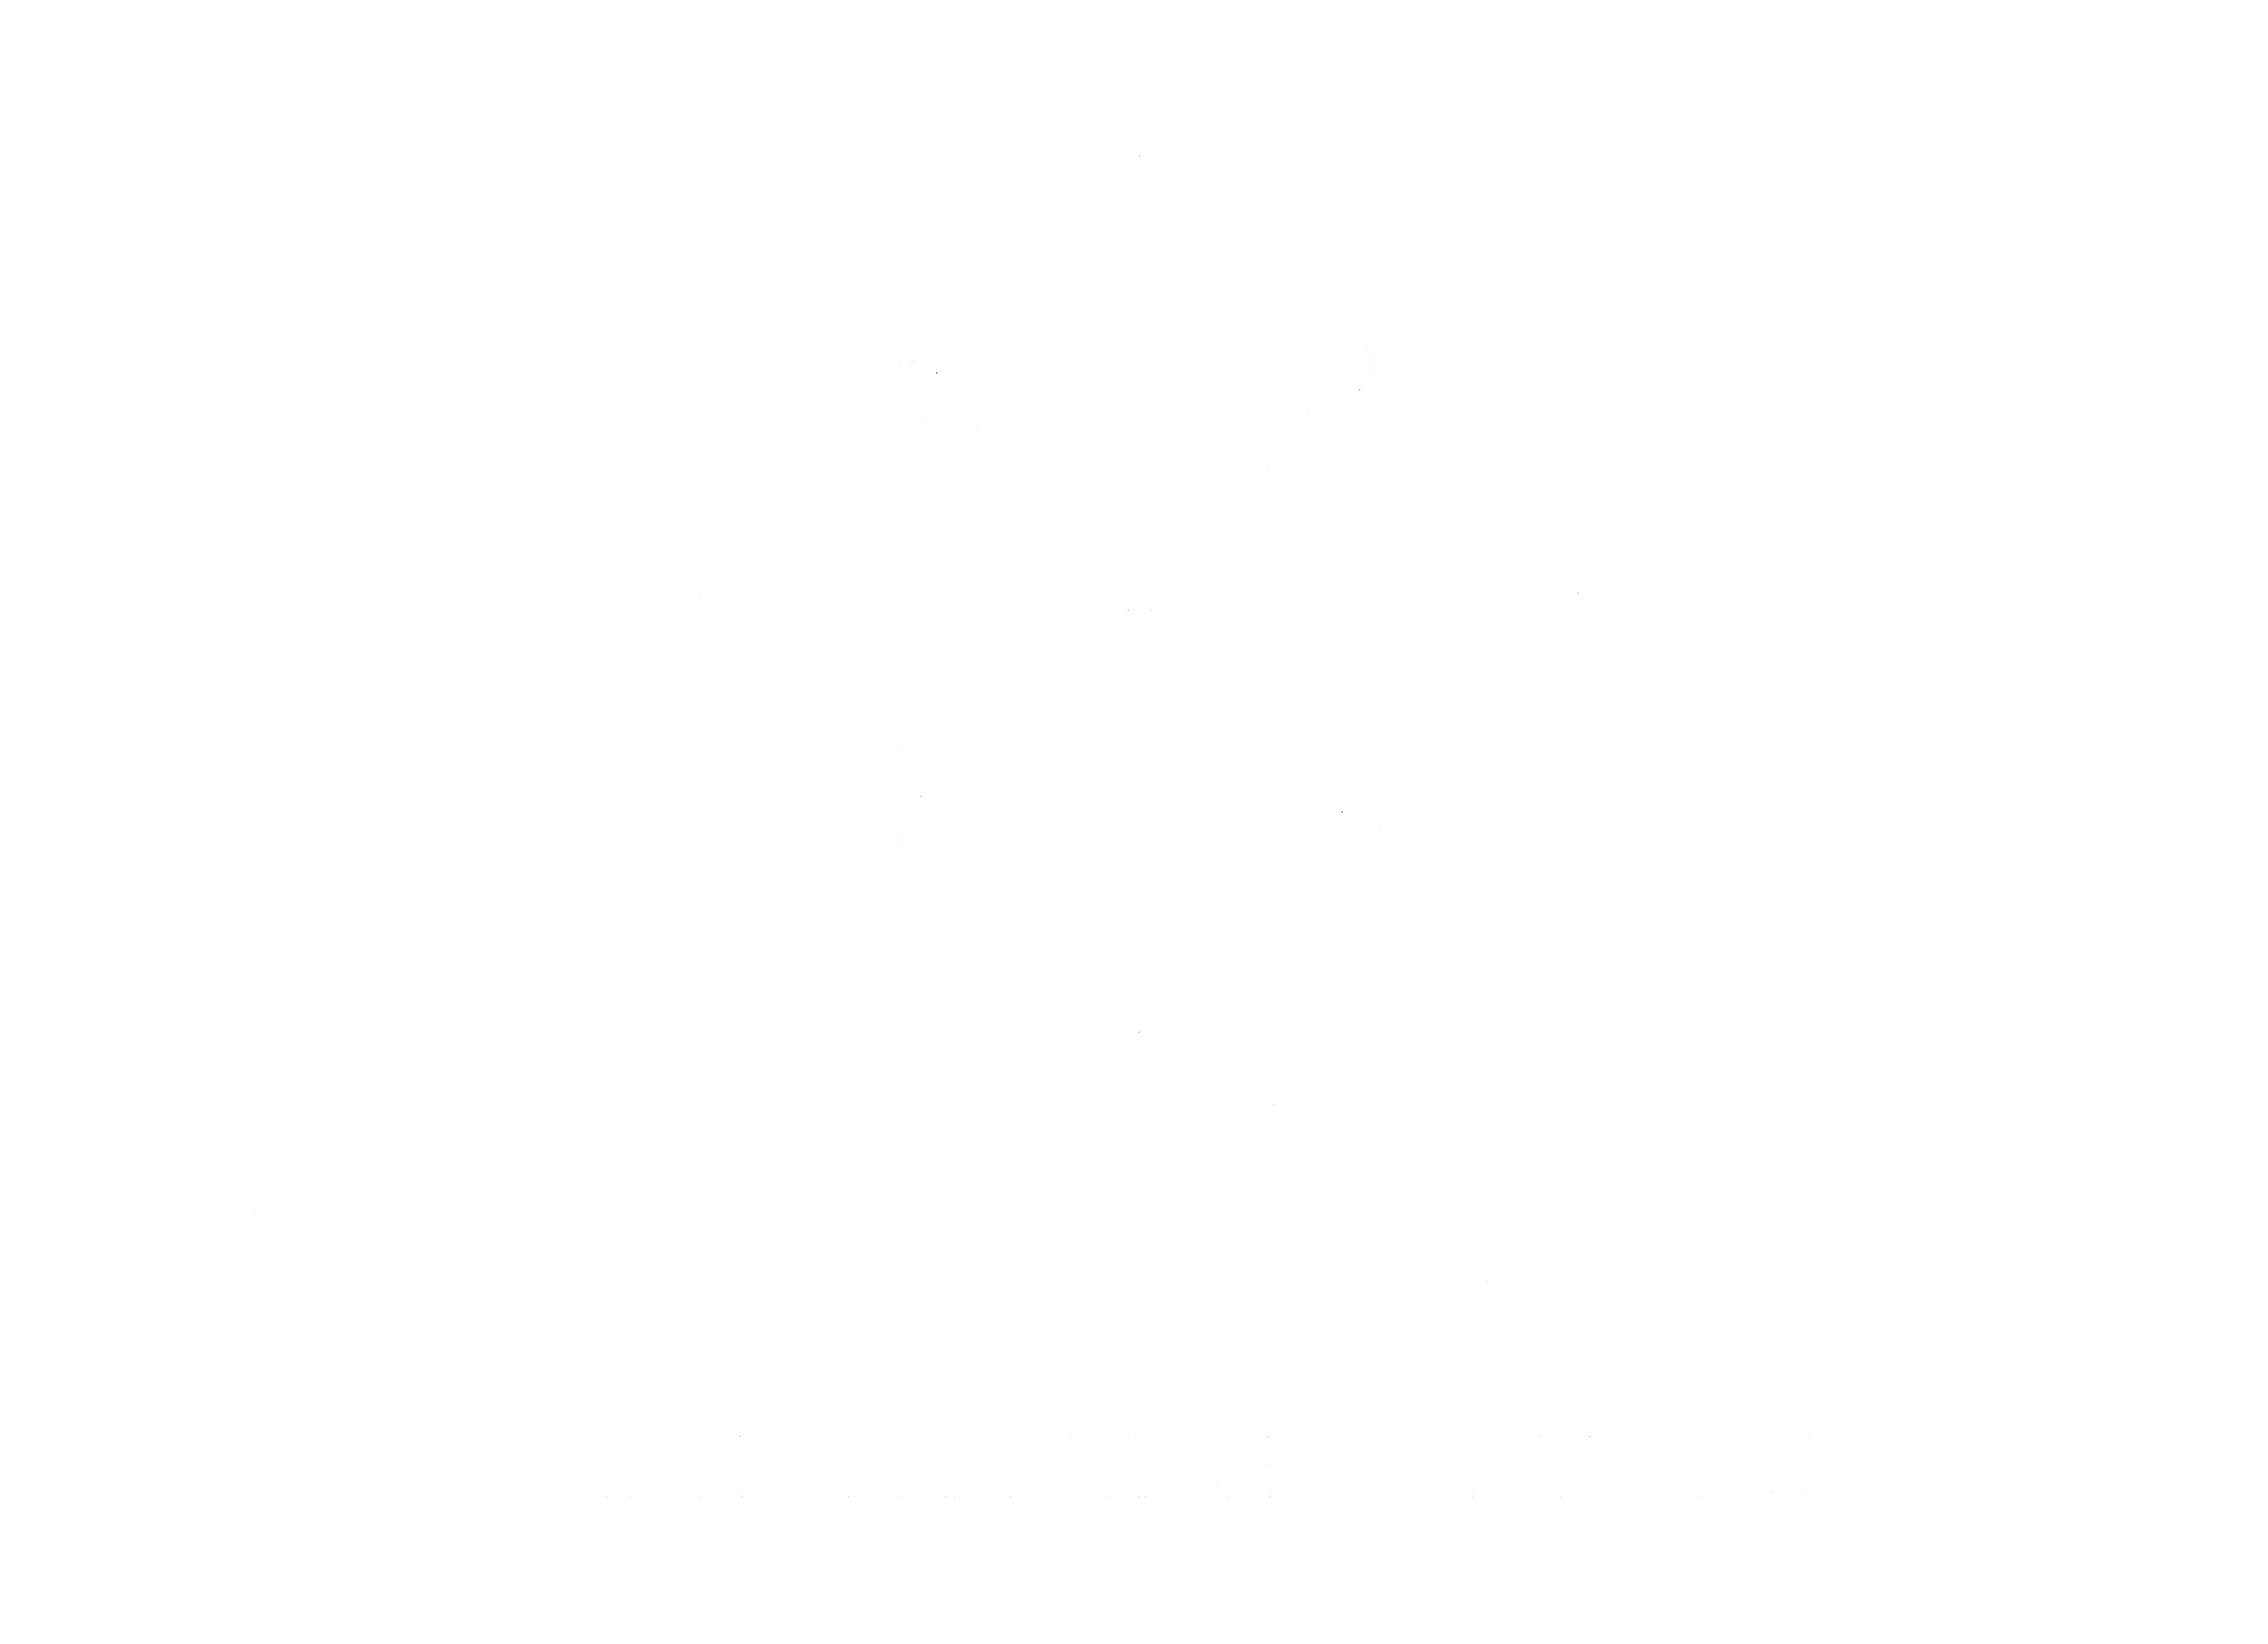 GPS Dental Logo